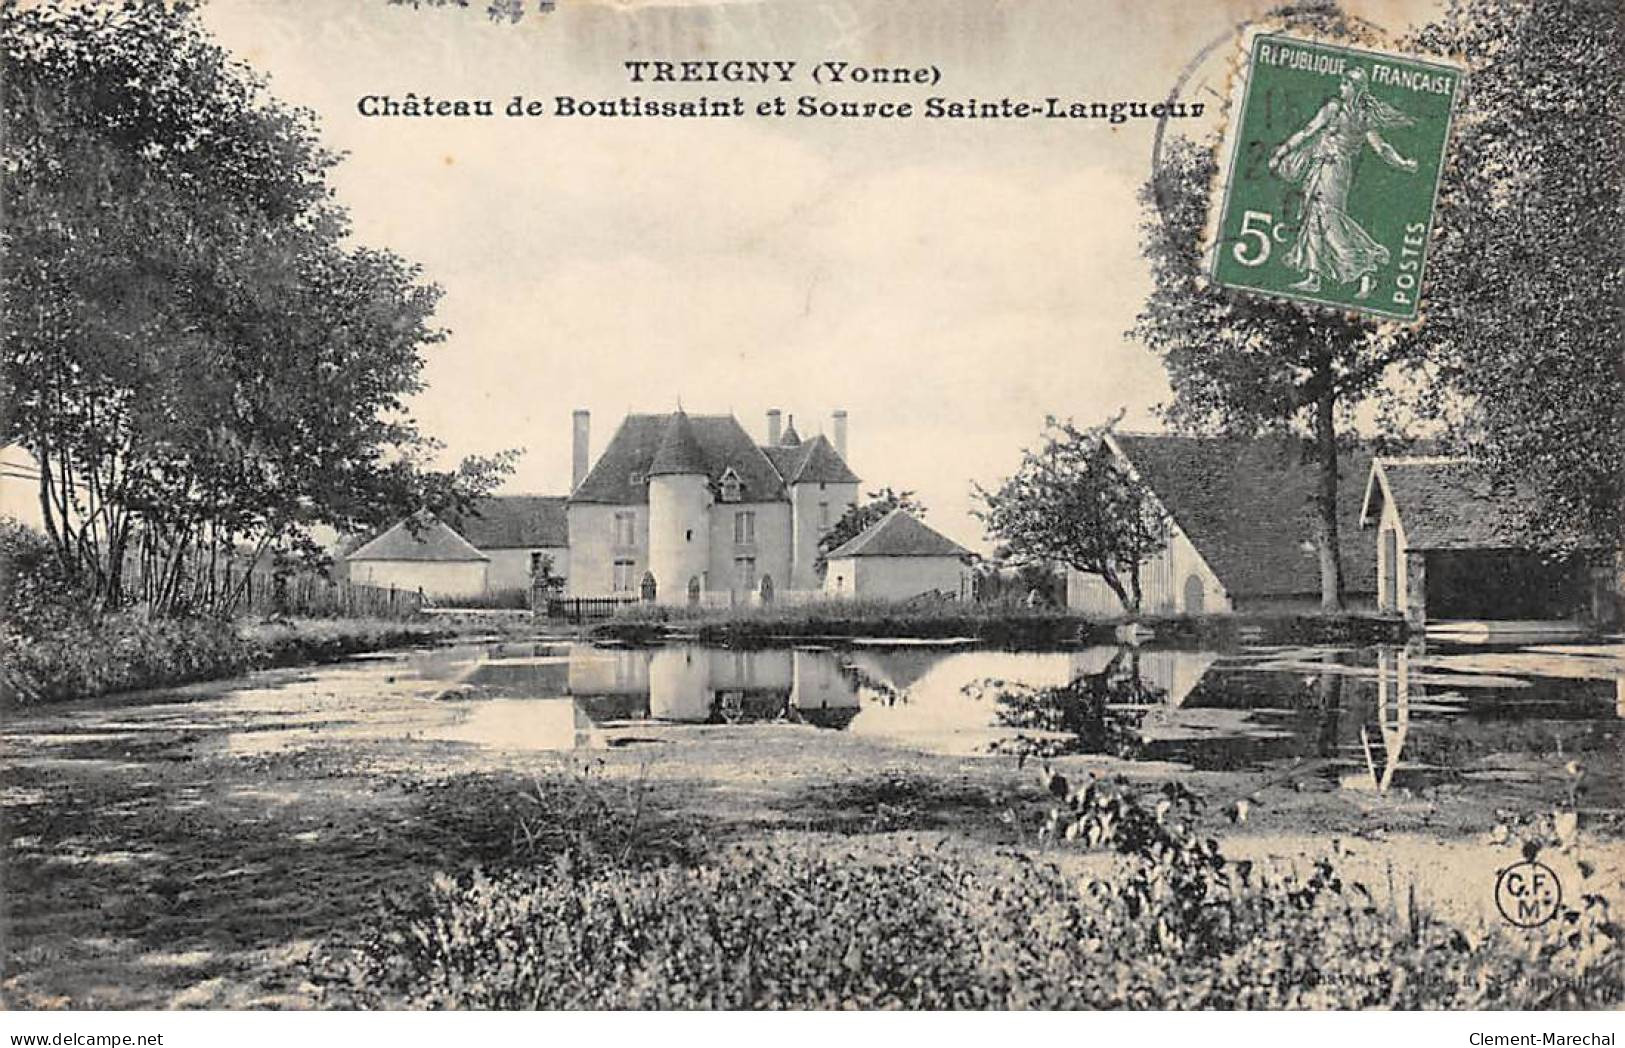 TREIGNY - Château De Boutissaint Et Source Sainte Langueur - état - Treigny